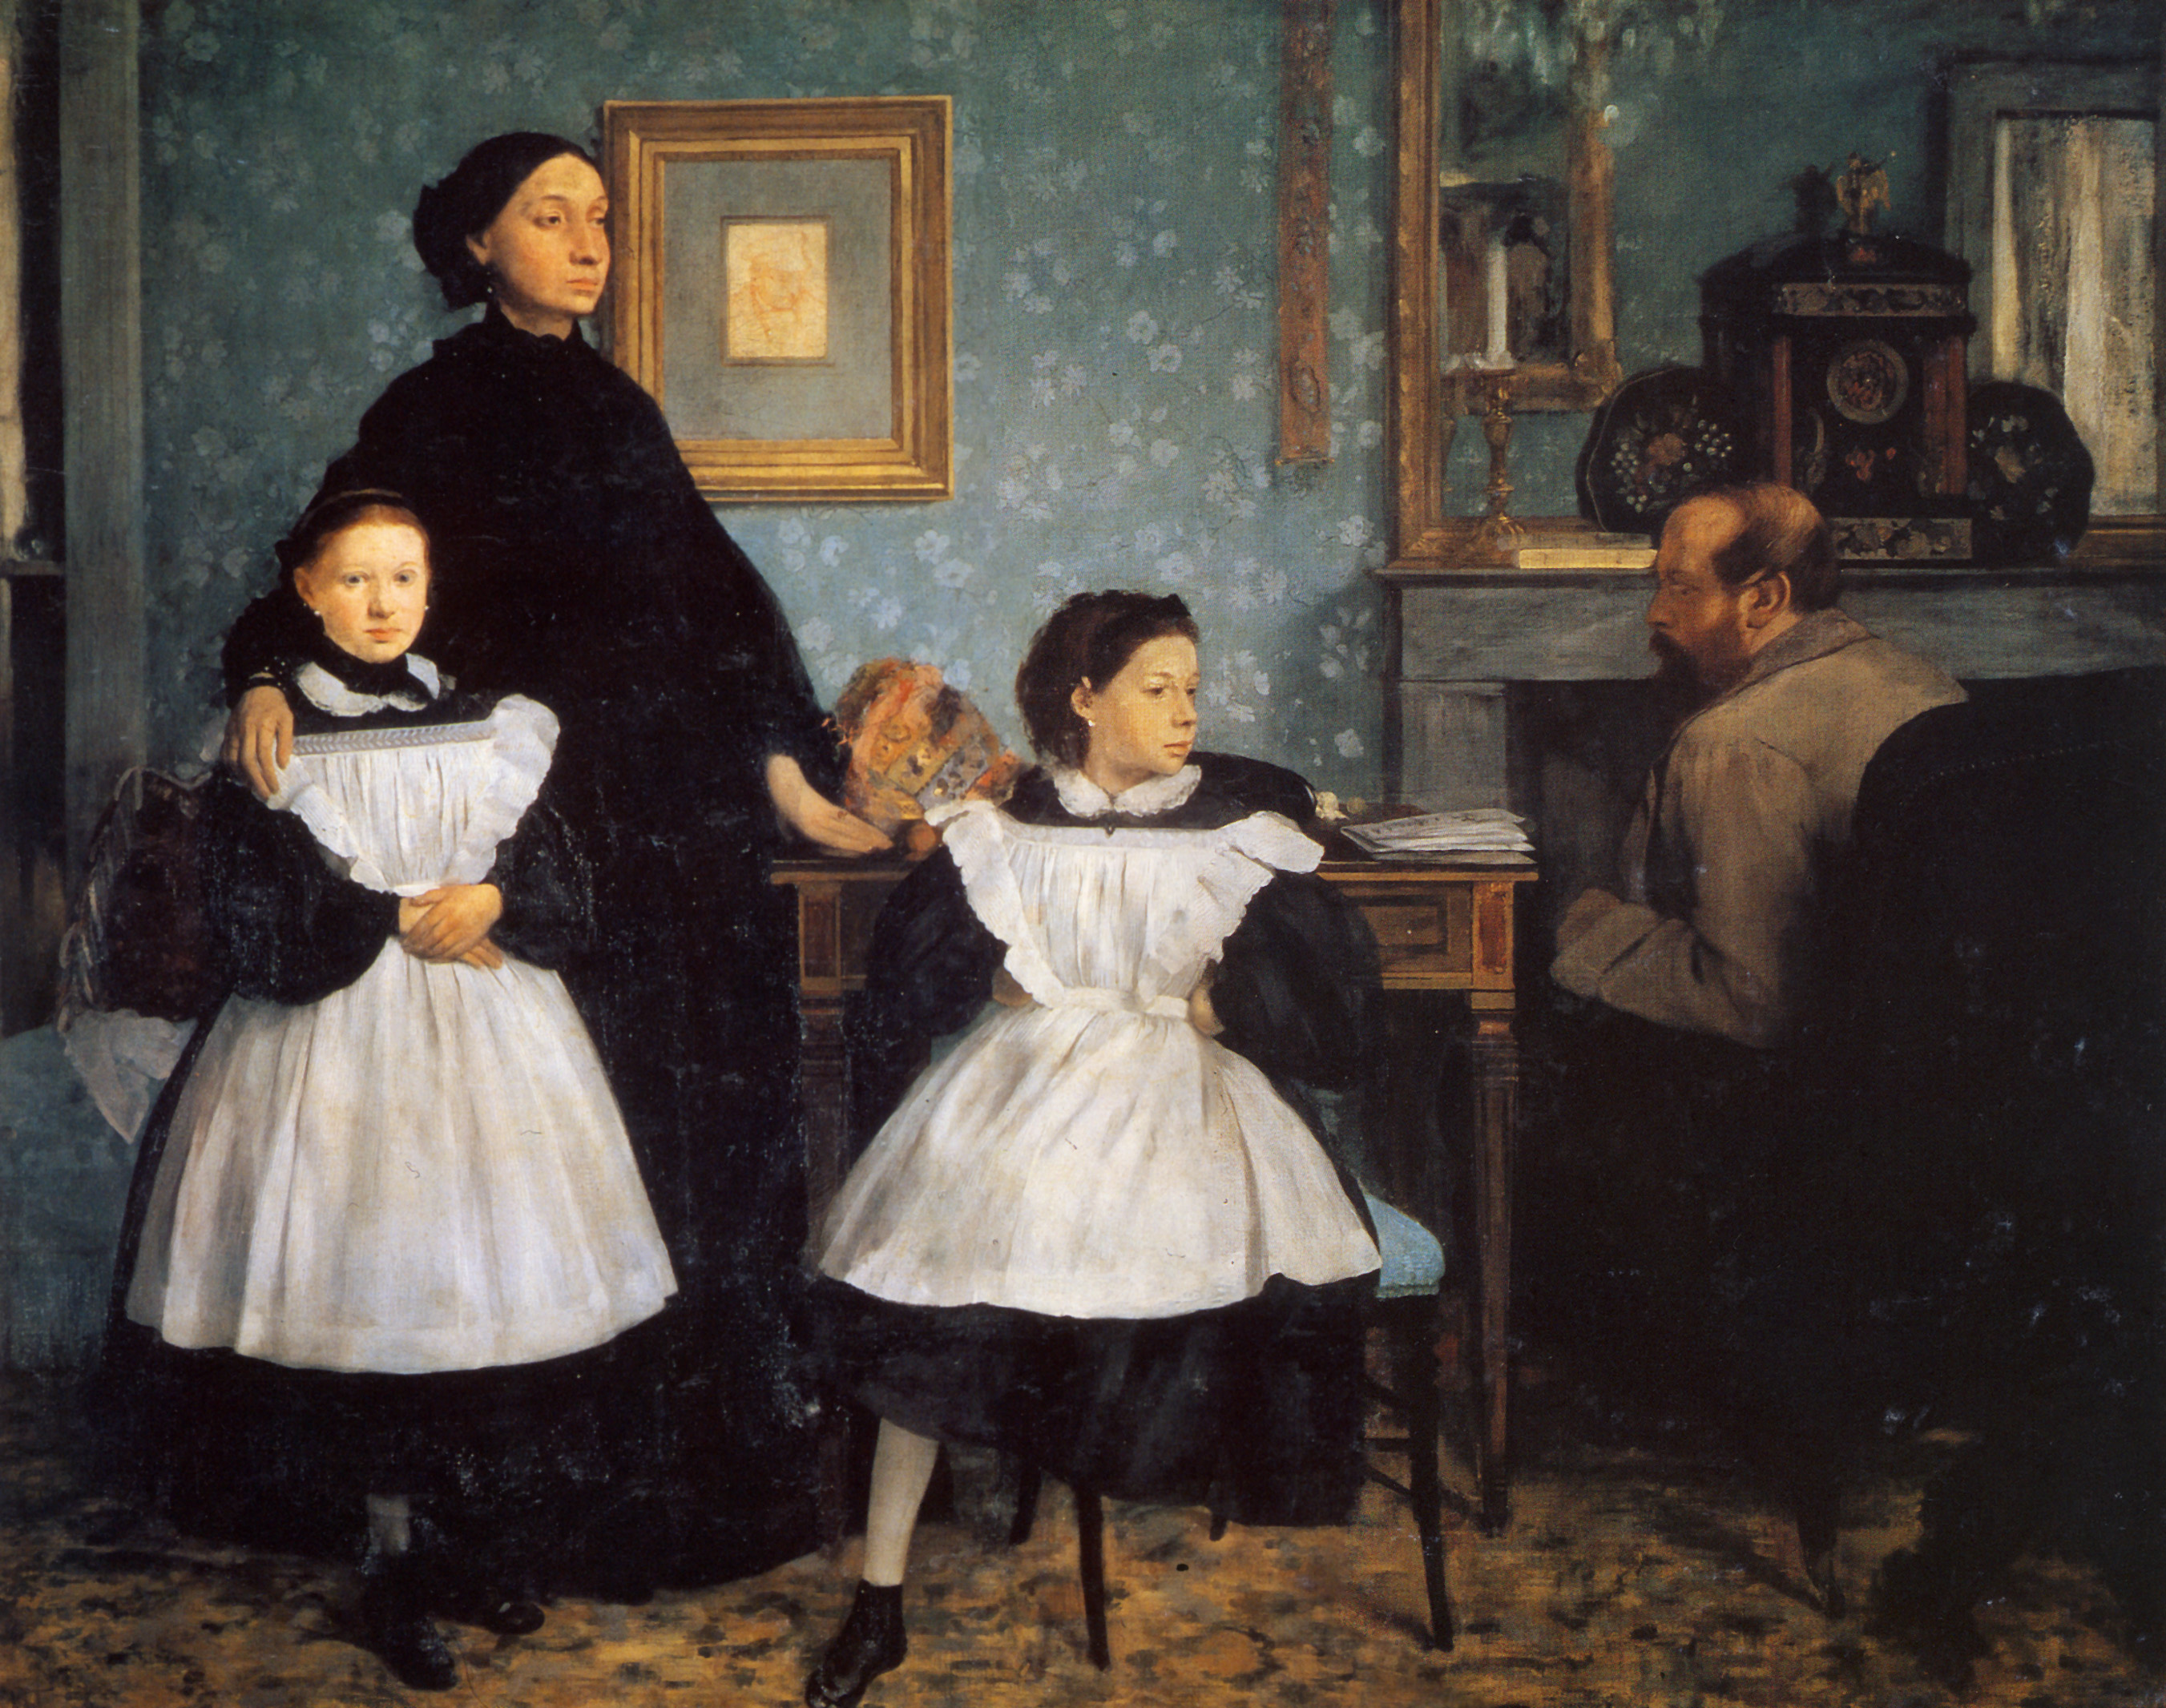 Die Bellelli Familie by Edgar Degas - 1860-1862 - 200 x 250 cm Musée d'Orsay